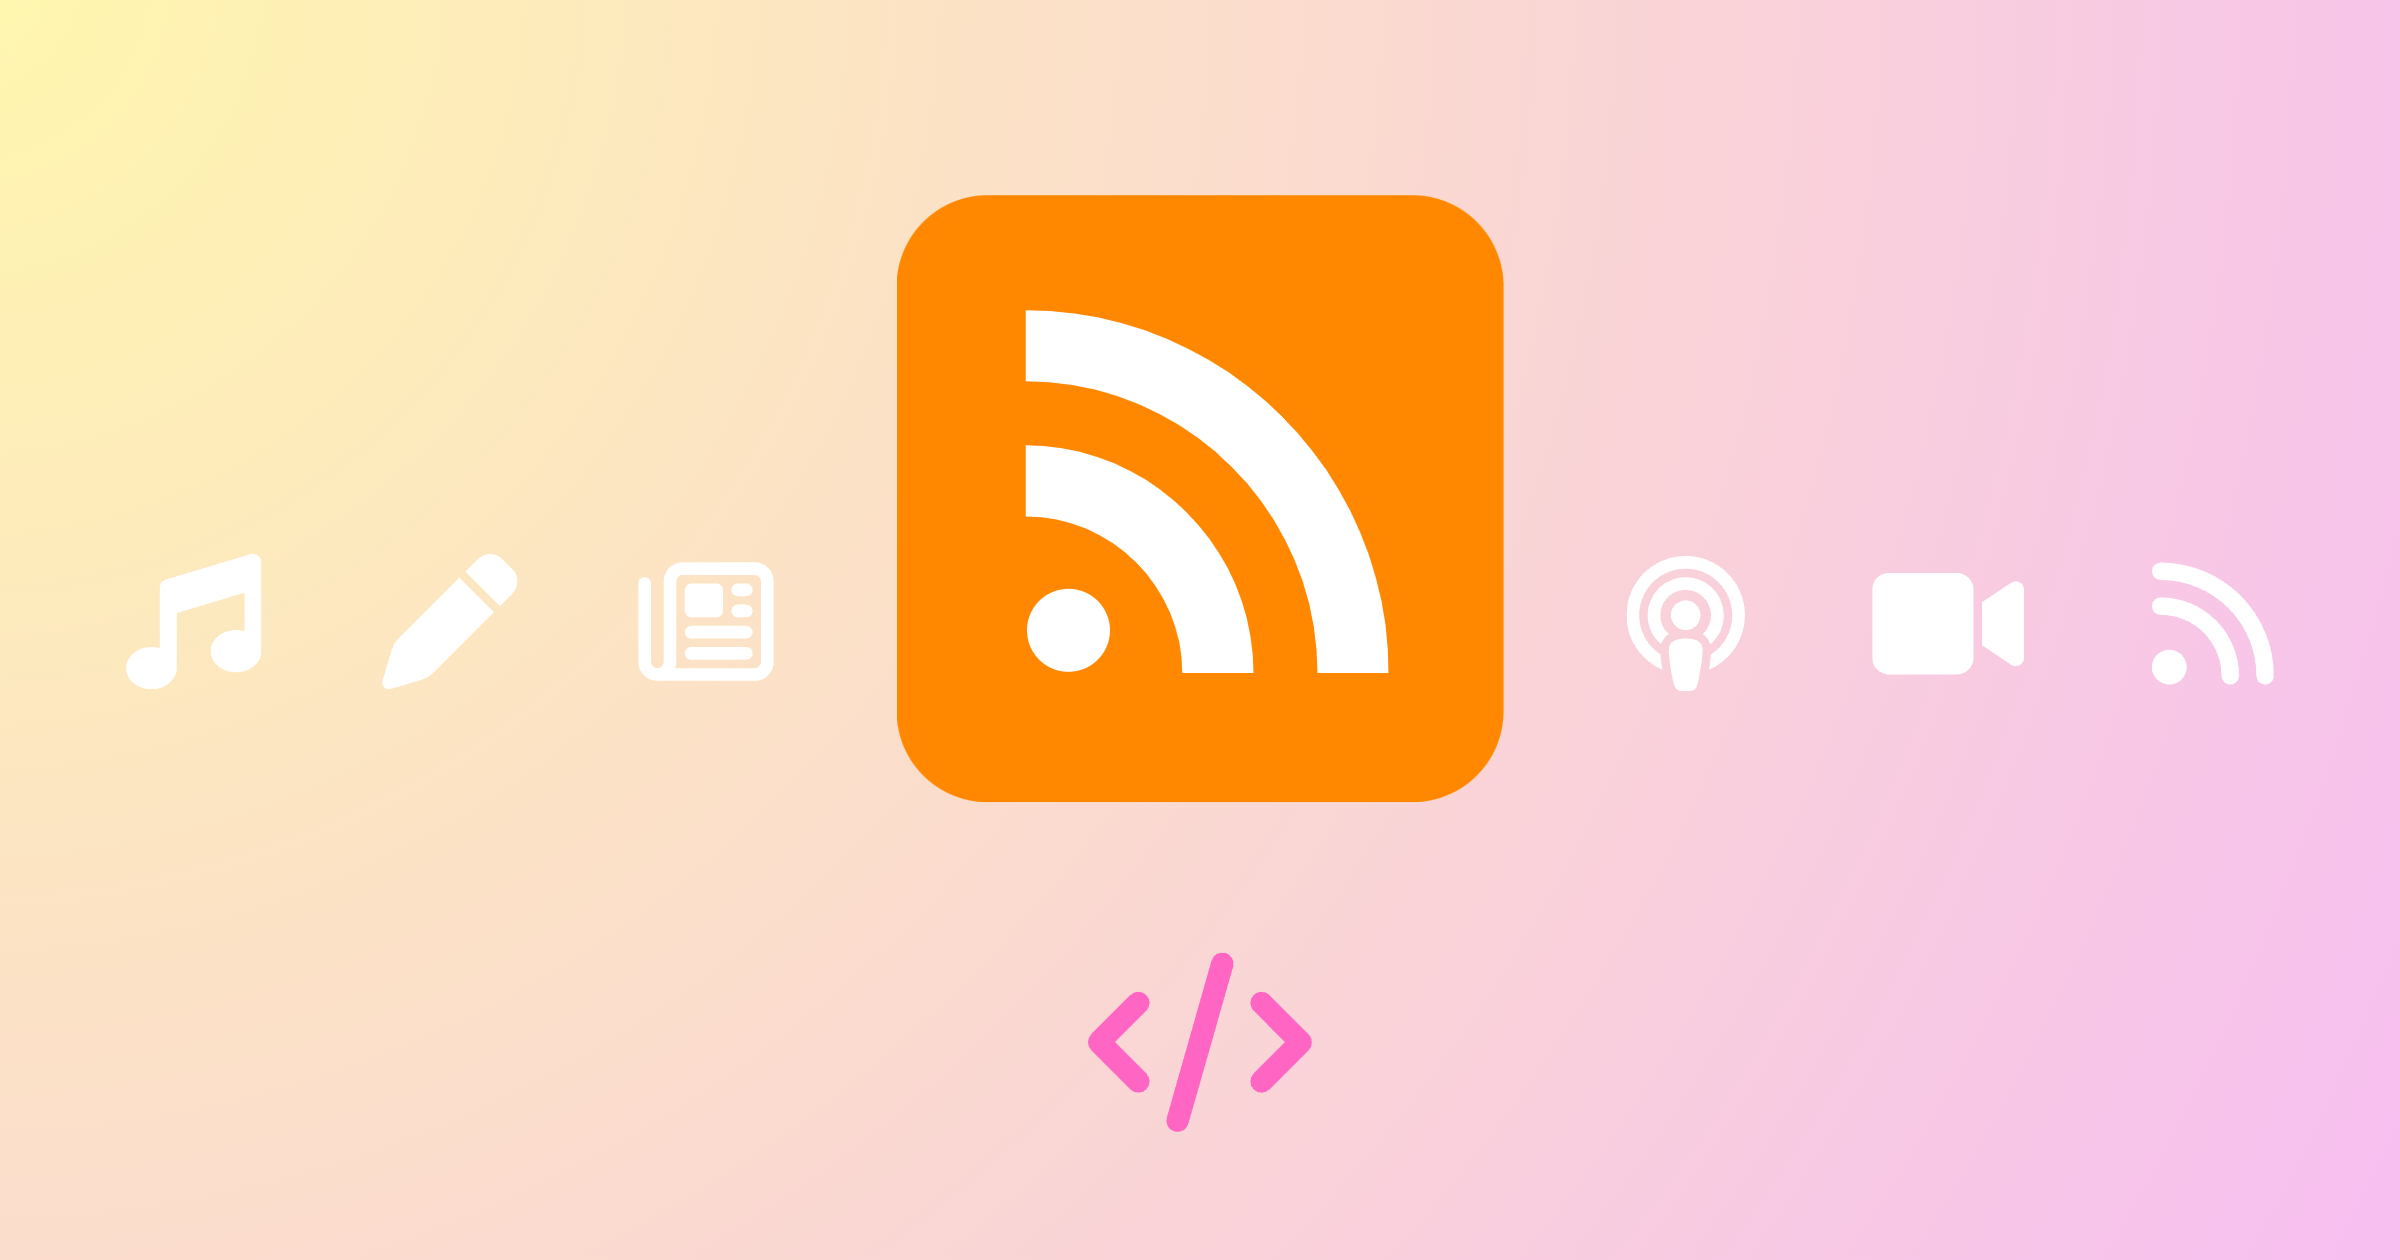 RSS 피드 — 콘텐츠를 지속 발행하는 웹사이트의 필수 기능